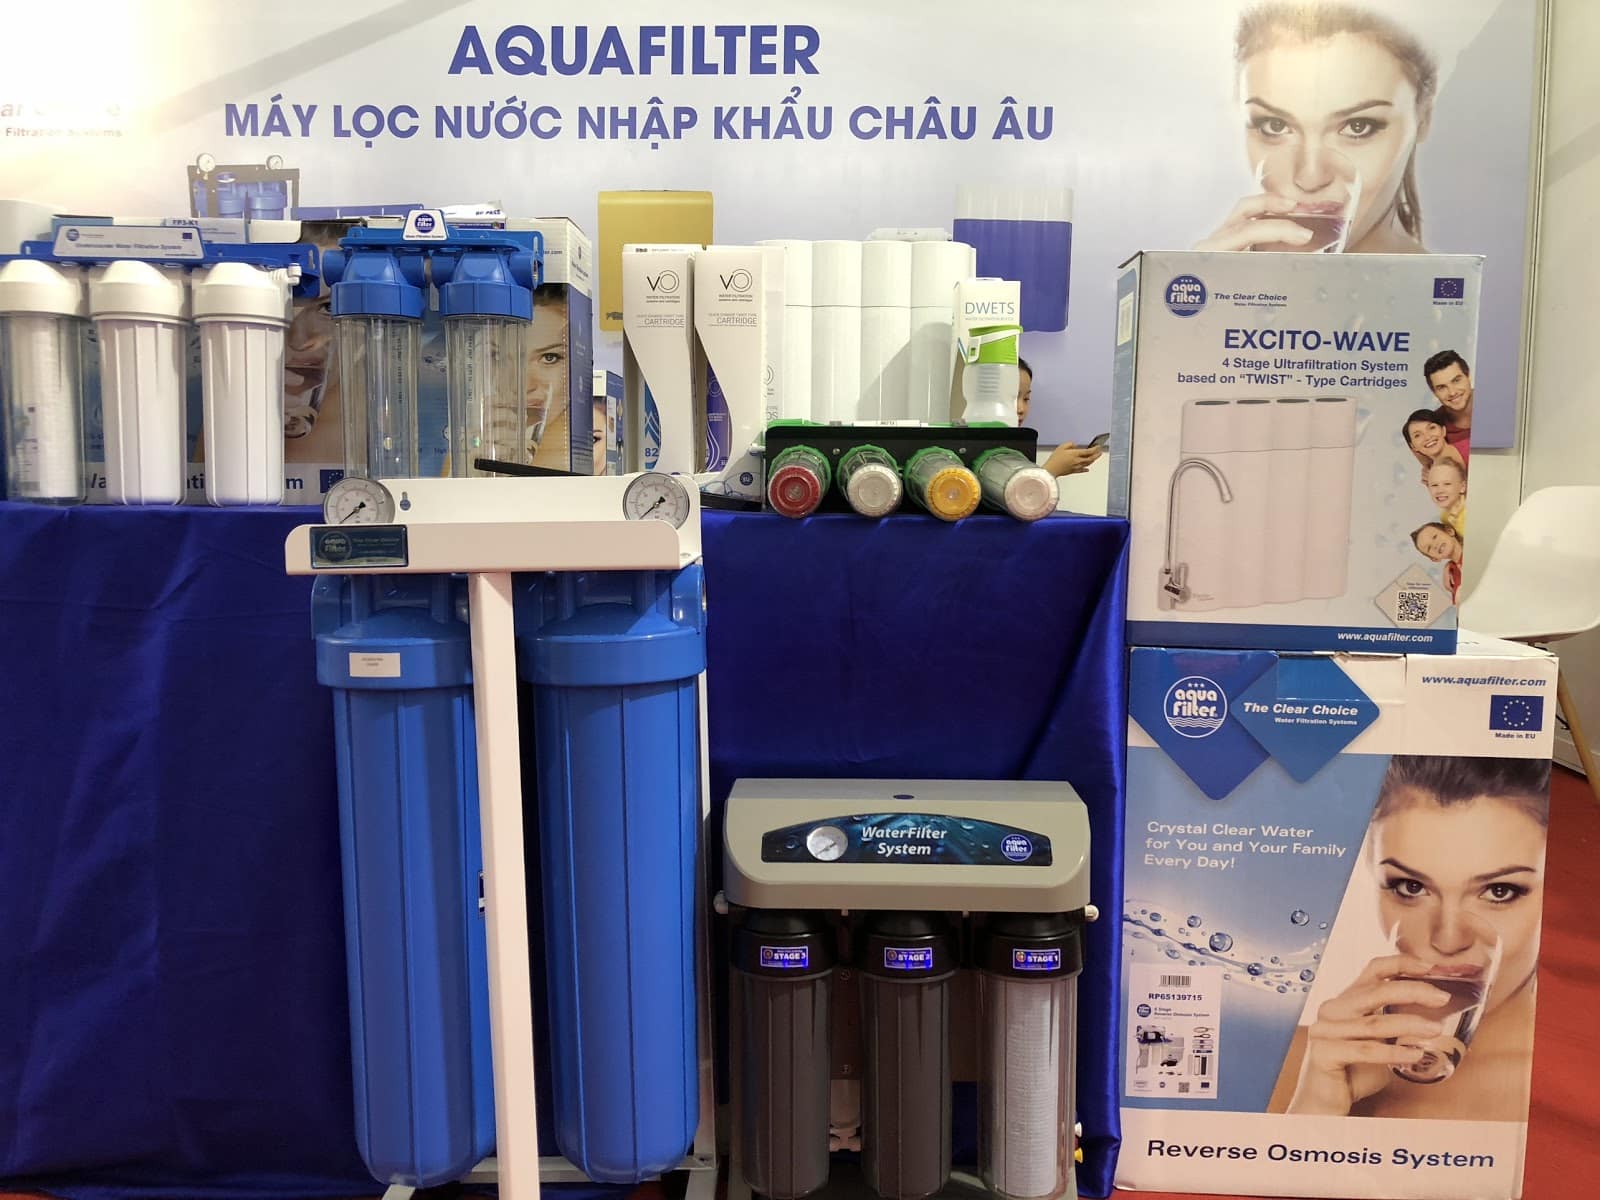 Máy lọc nước Aquafilter là biện pháp xử lý nước ô nhiễm kim loại nặng hiệu quả